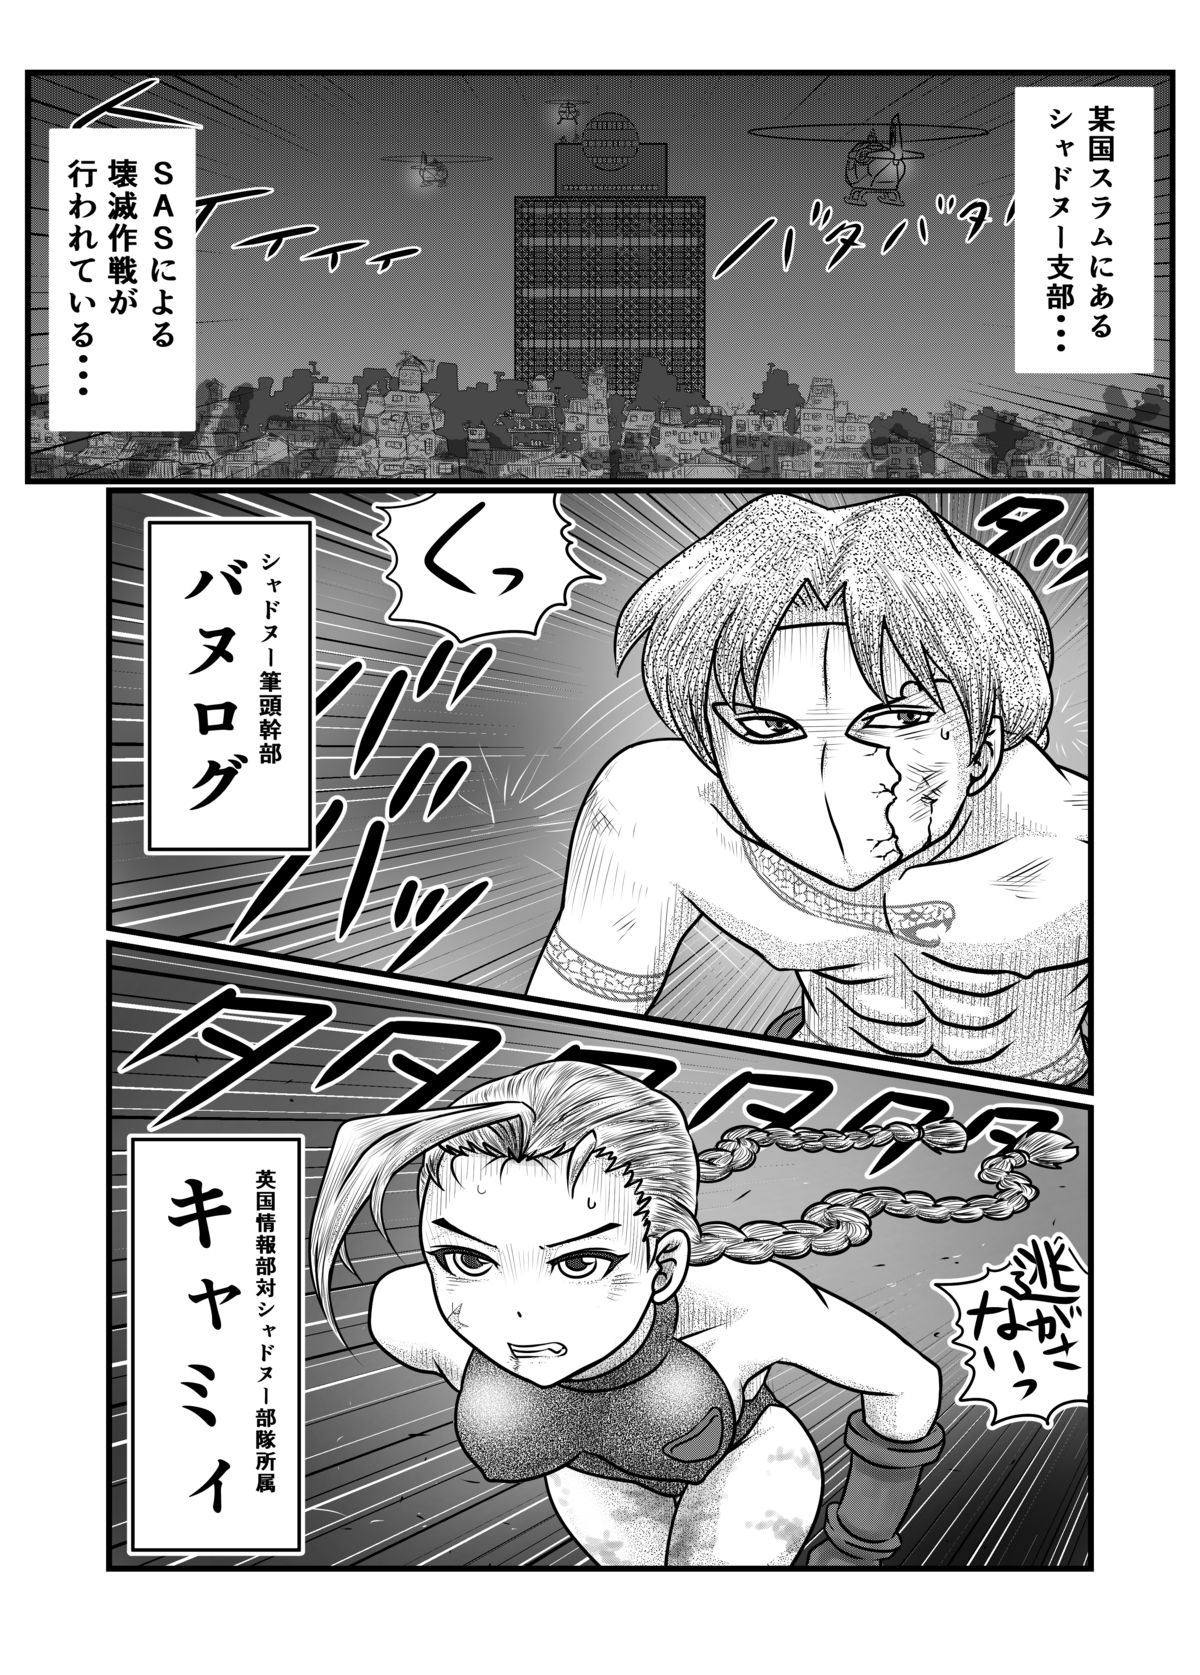 [Nomerikomu] Banurog no Shibou Yuugi (Street Fighter) page 7 full